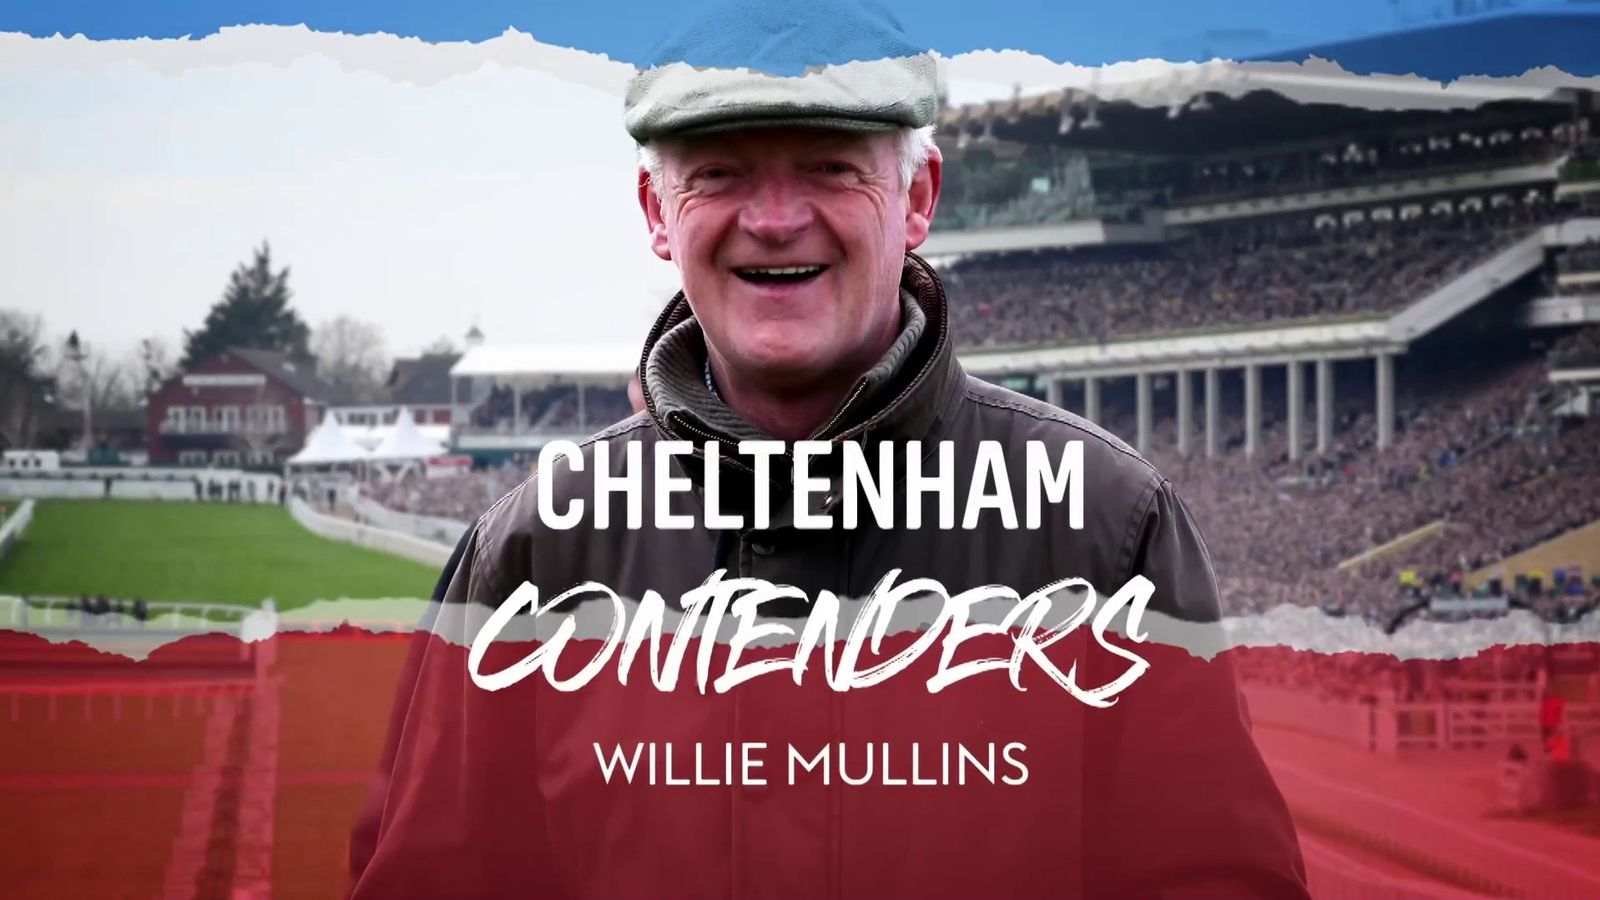 Festival de Cheltenham: Willie Mullins revela todo sobre su equipo, ¡incluido el favorito de la Copa Oro, Galopin Des Champs!  |  Noticias de carreras